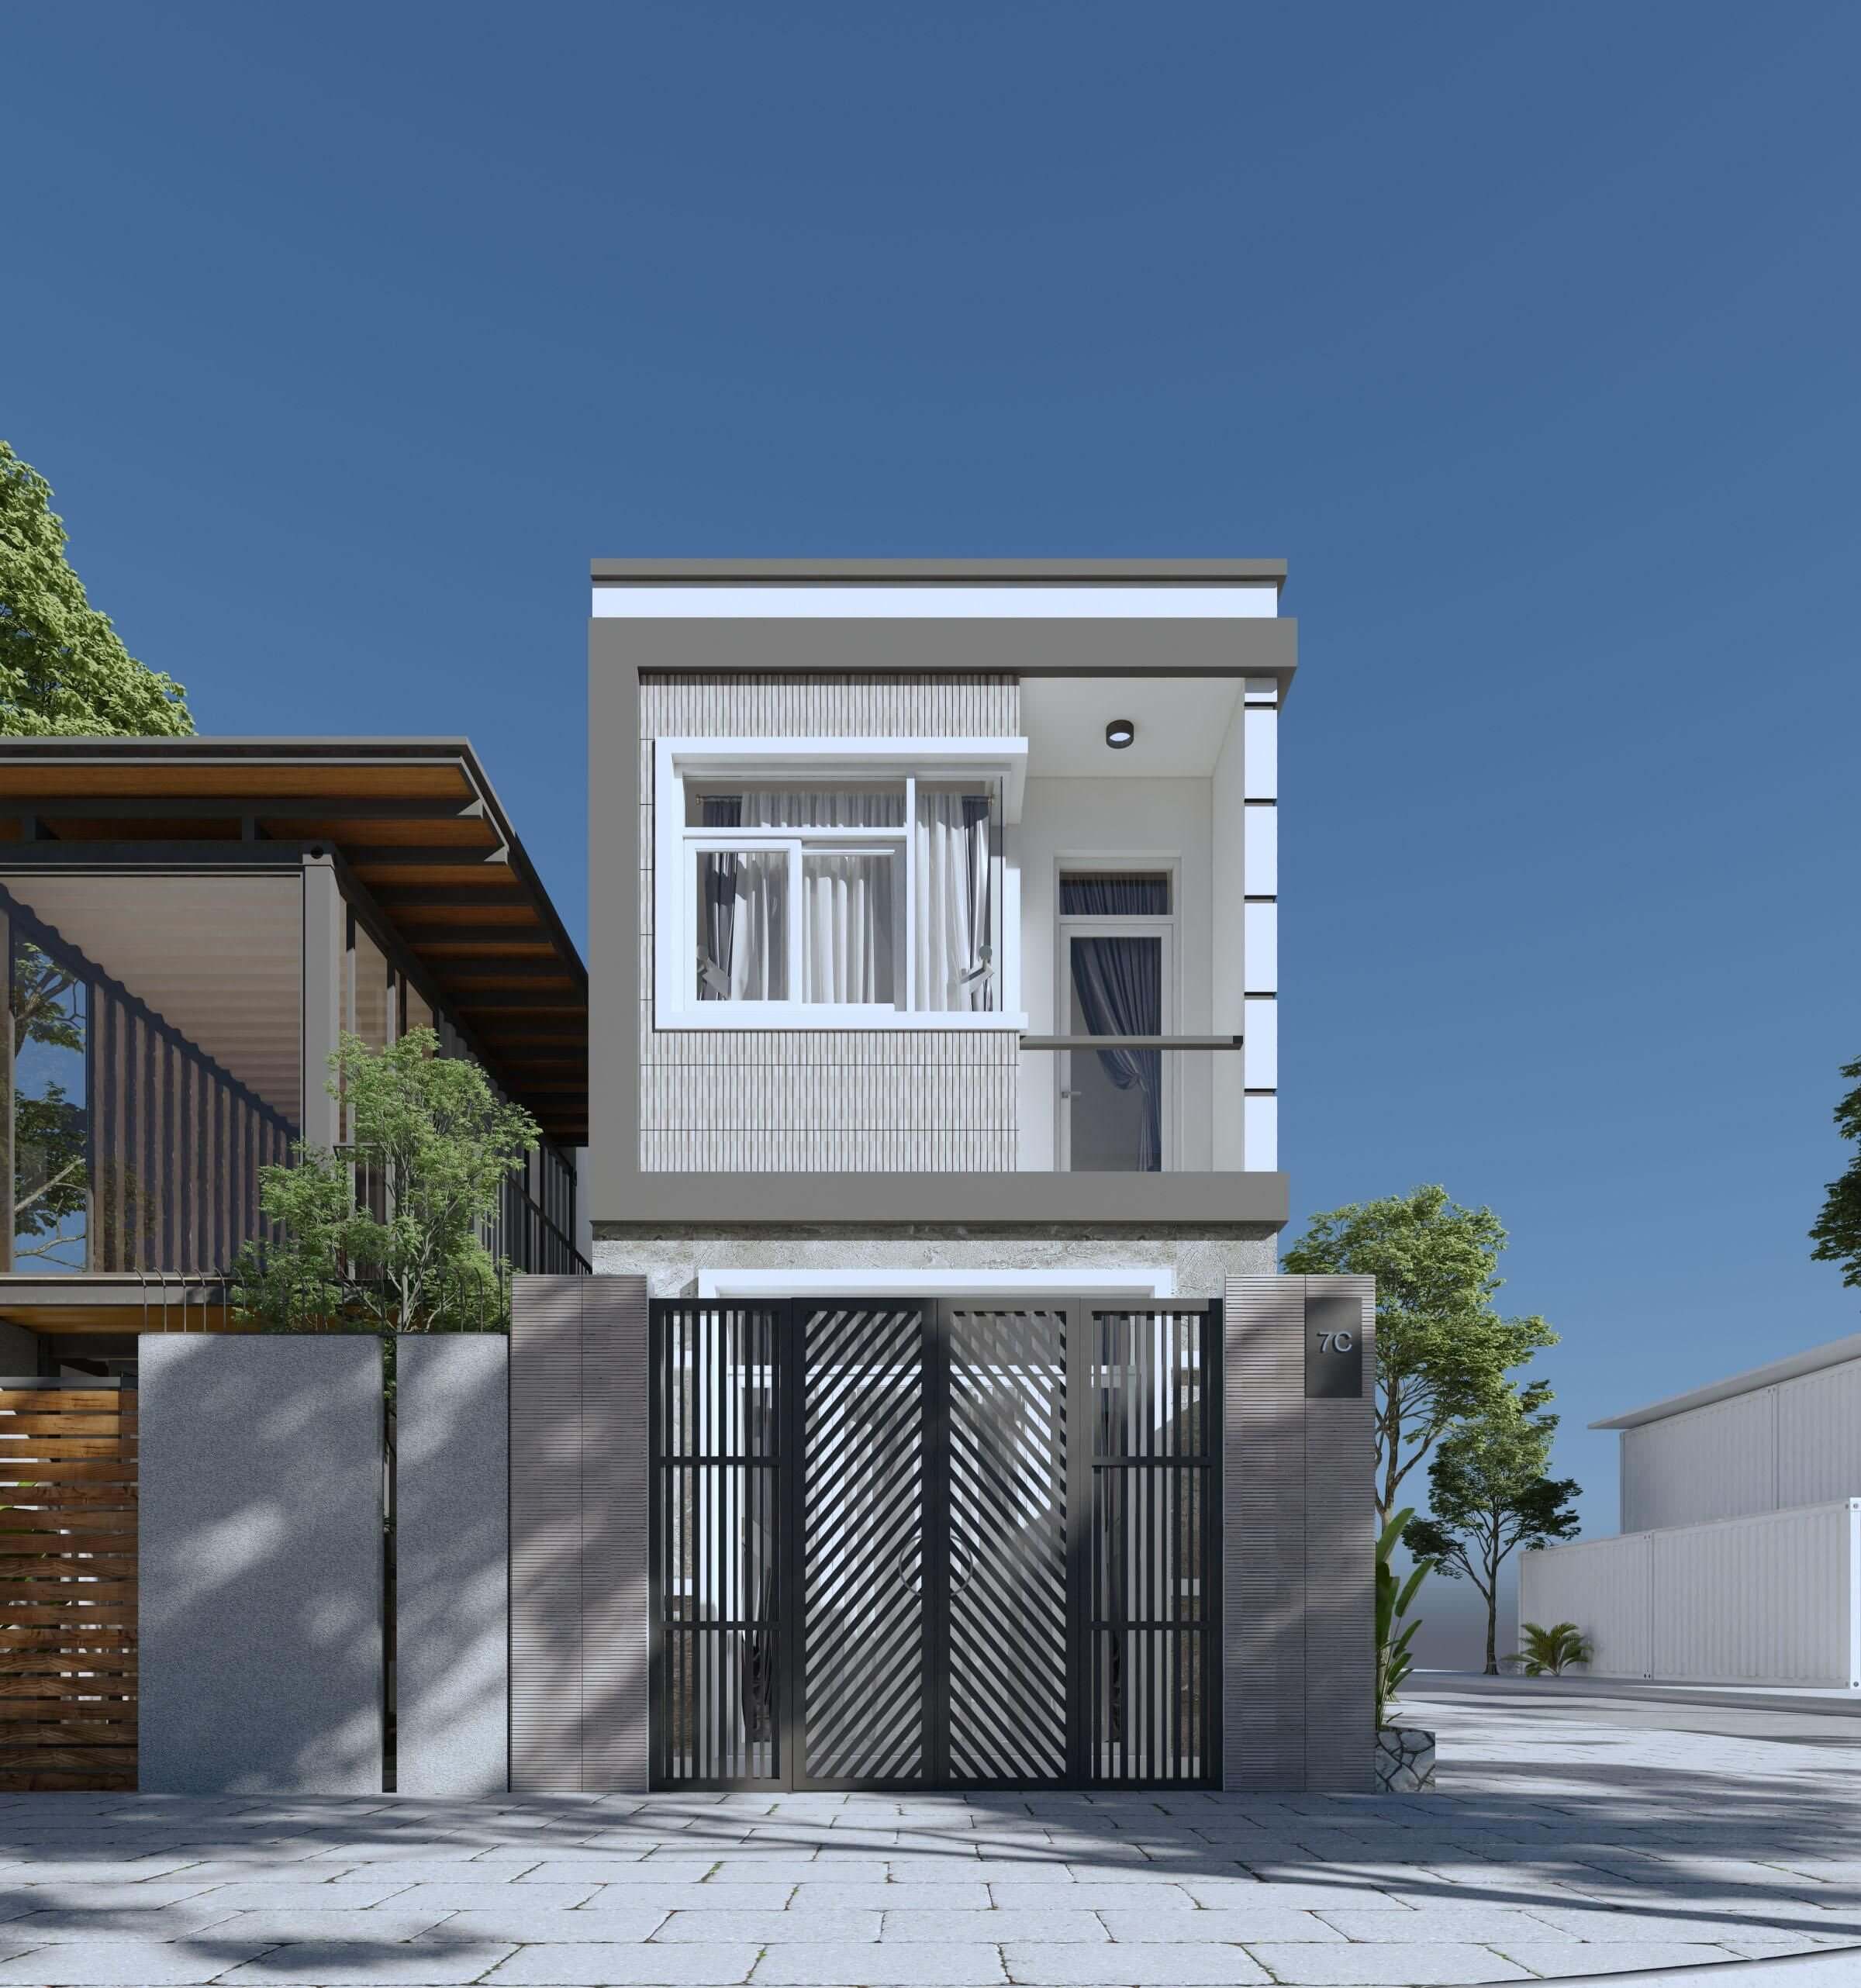 GỢI Ý NHÀ CẤP 4 DIỆN TÍCH 6x8M 2 PHÒNG NGỦ ĐƠN GIẢN ĐẸP - YouTube | Thiết  kế nhà nhỏ, Mặt bằng tầng nhà, Phương án thiết kế nhà